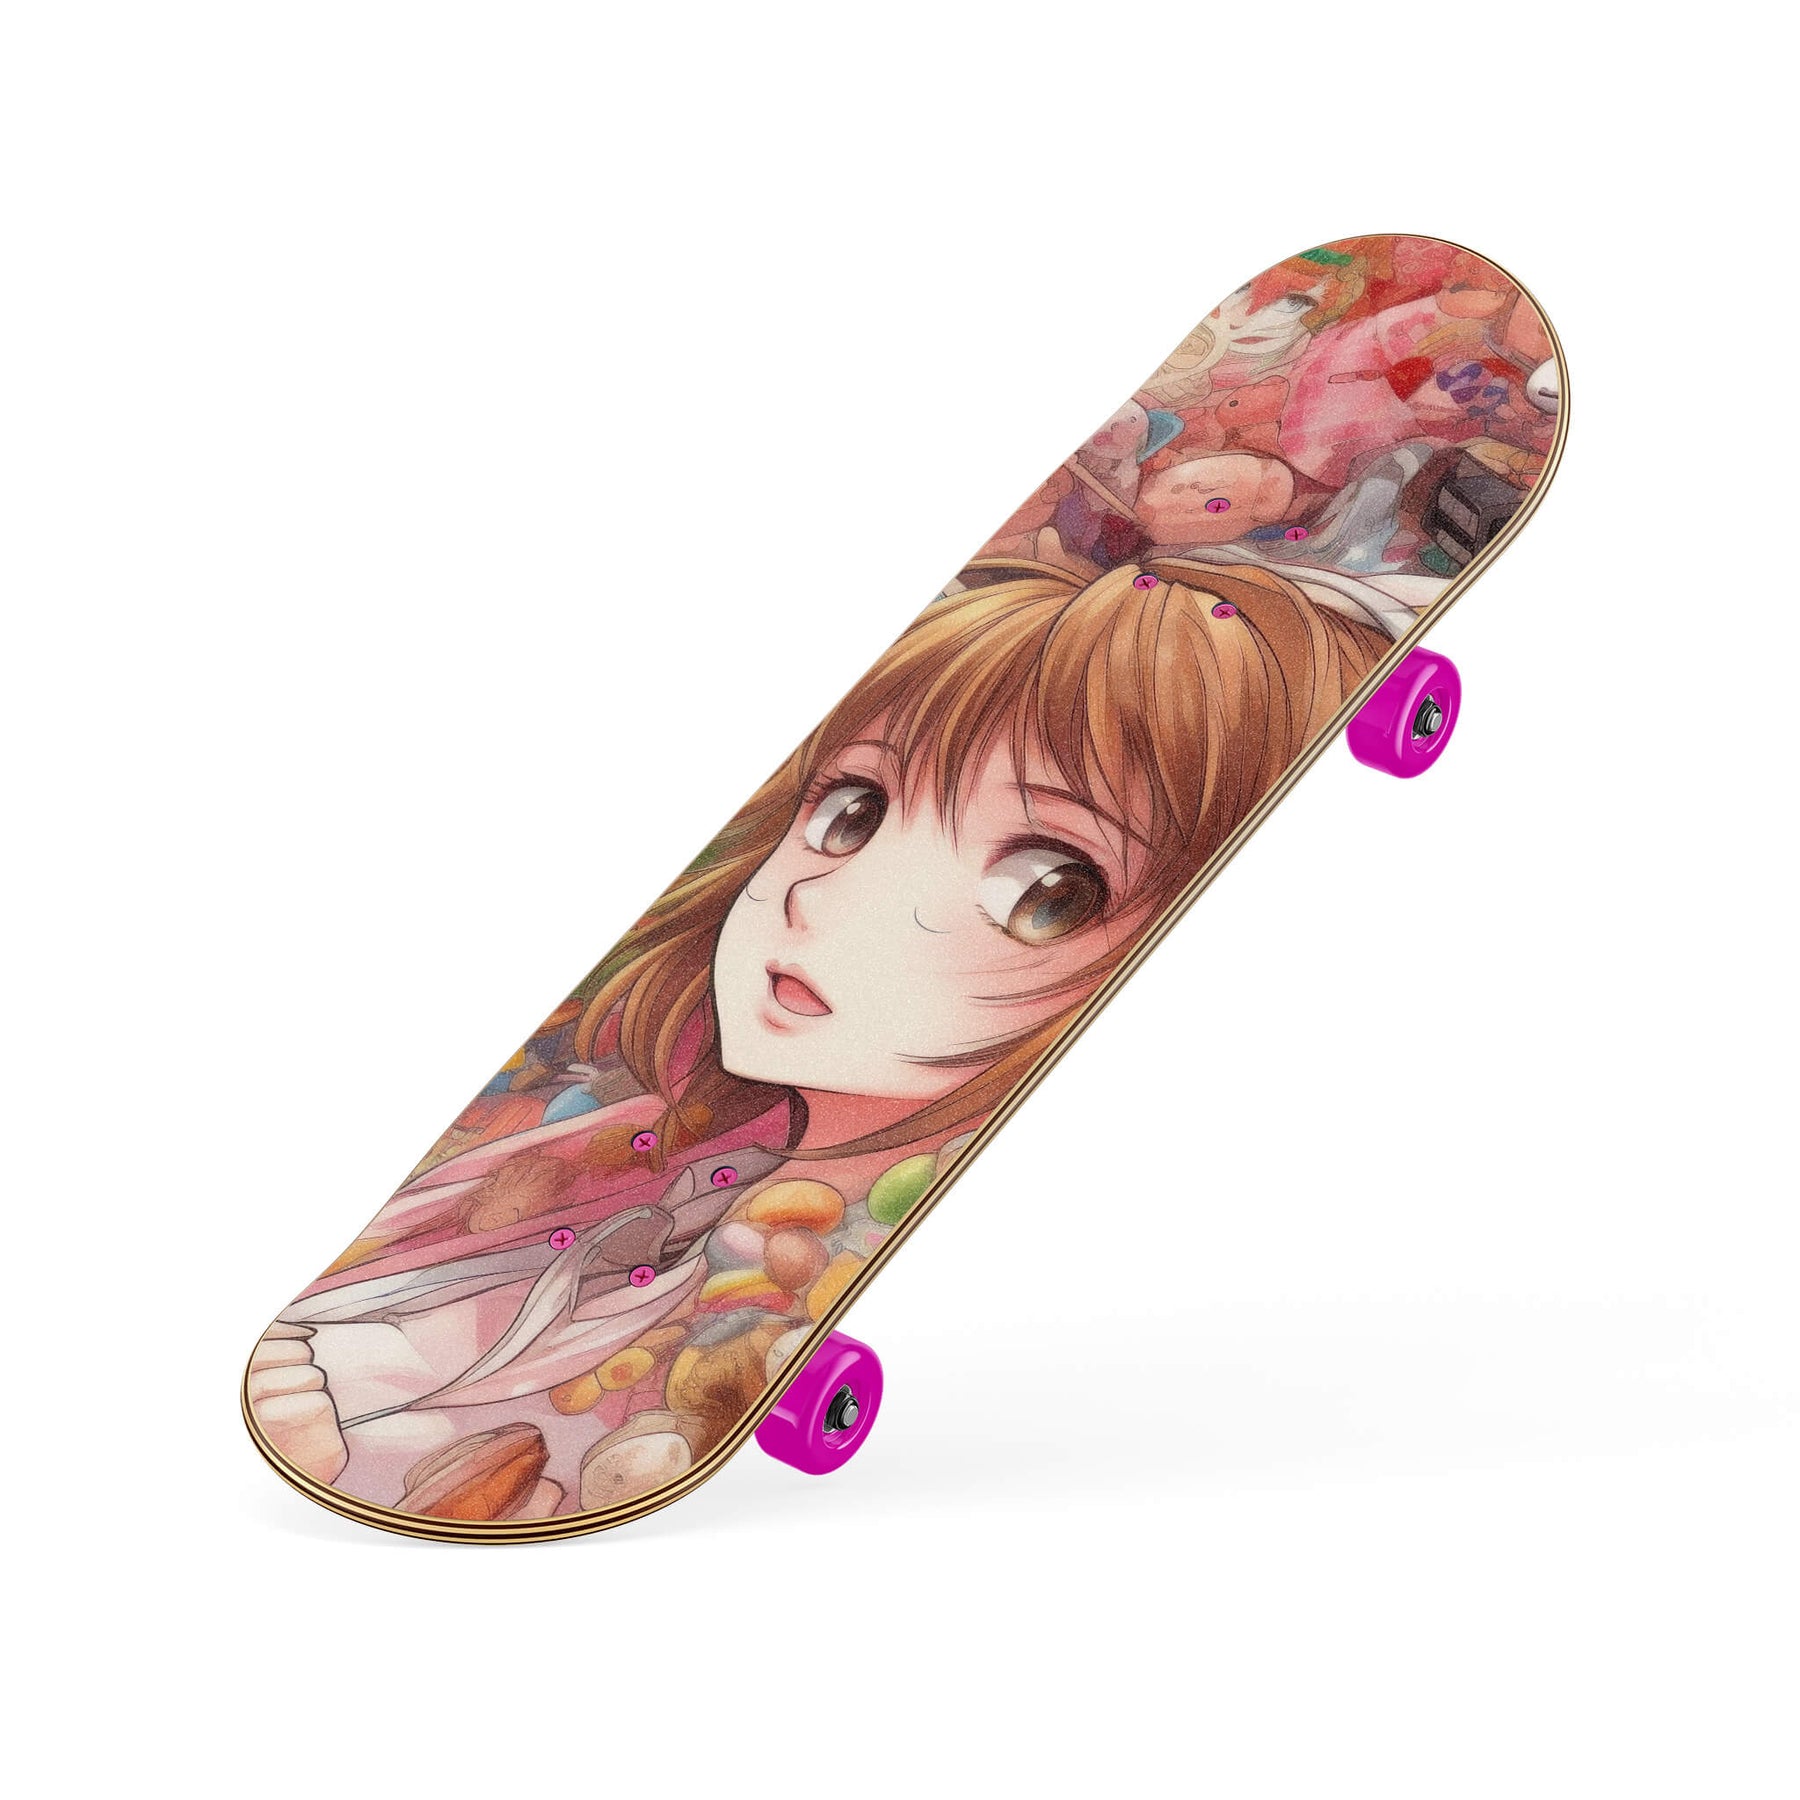 Anime Skate Night